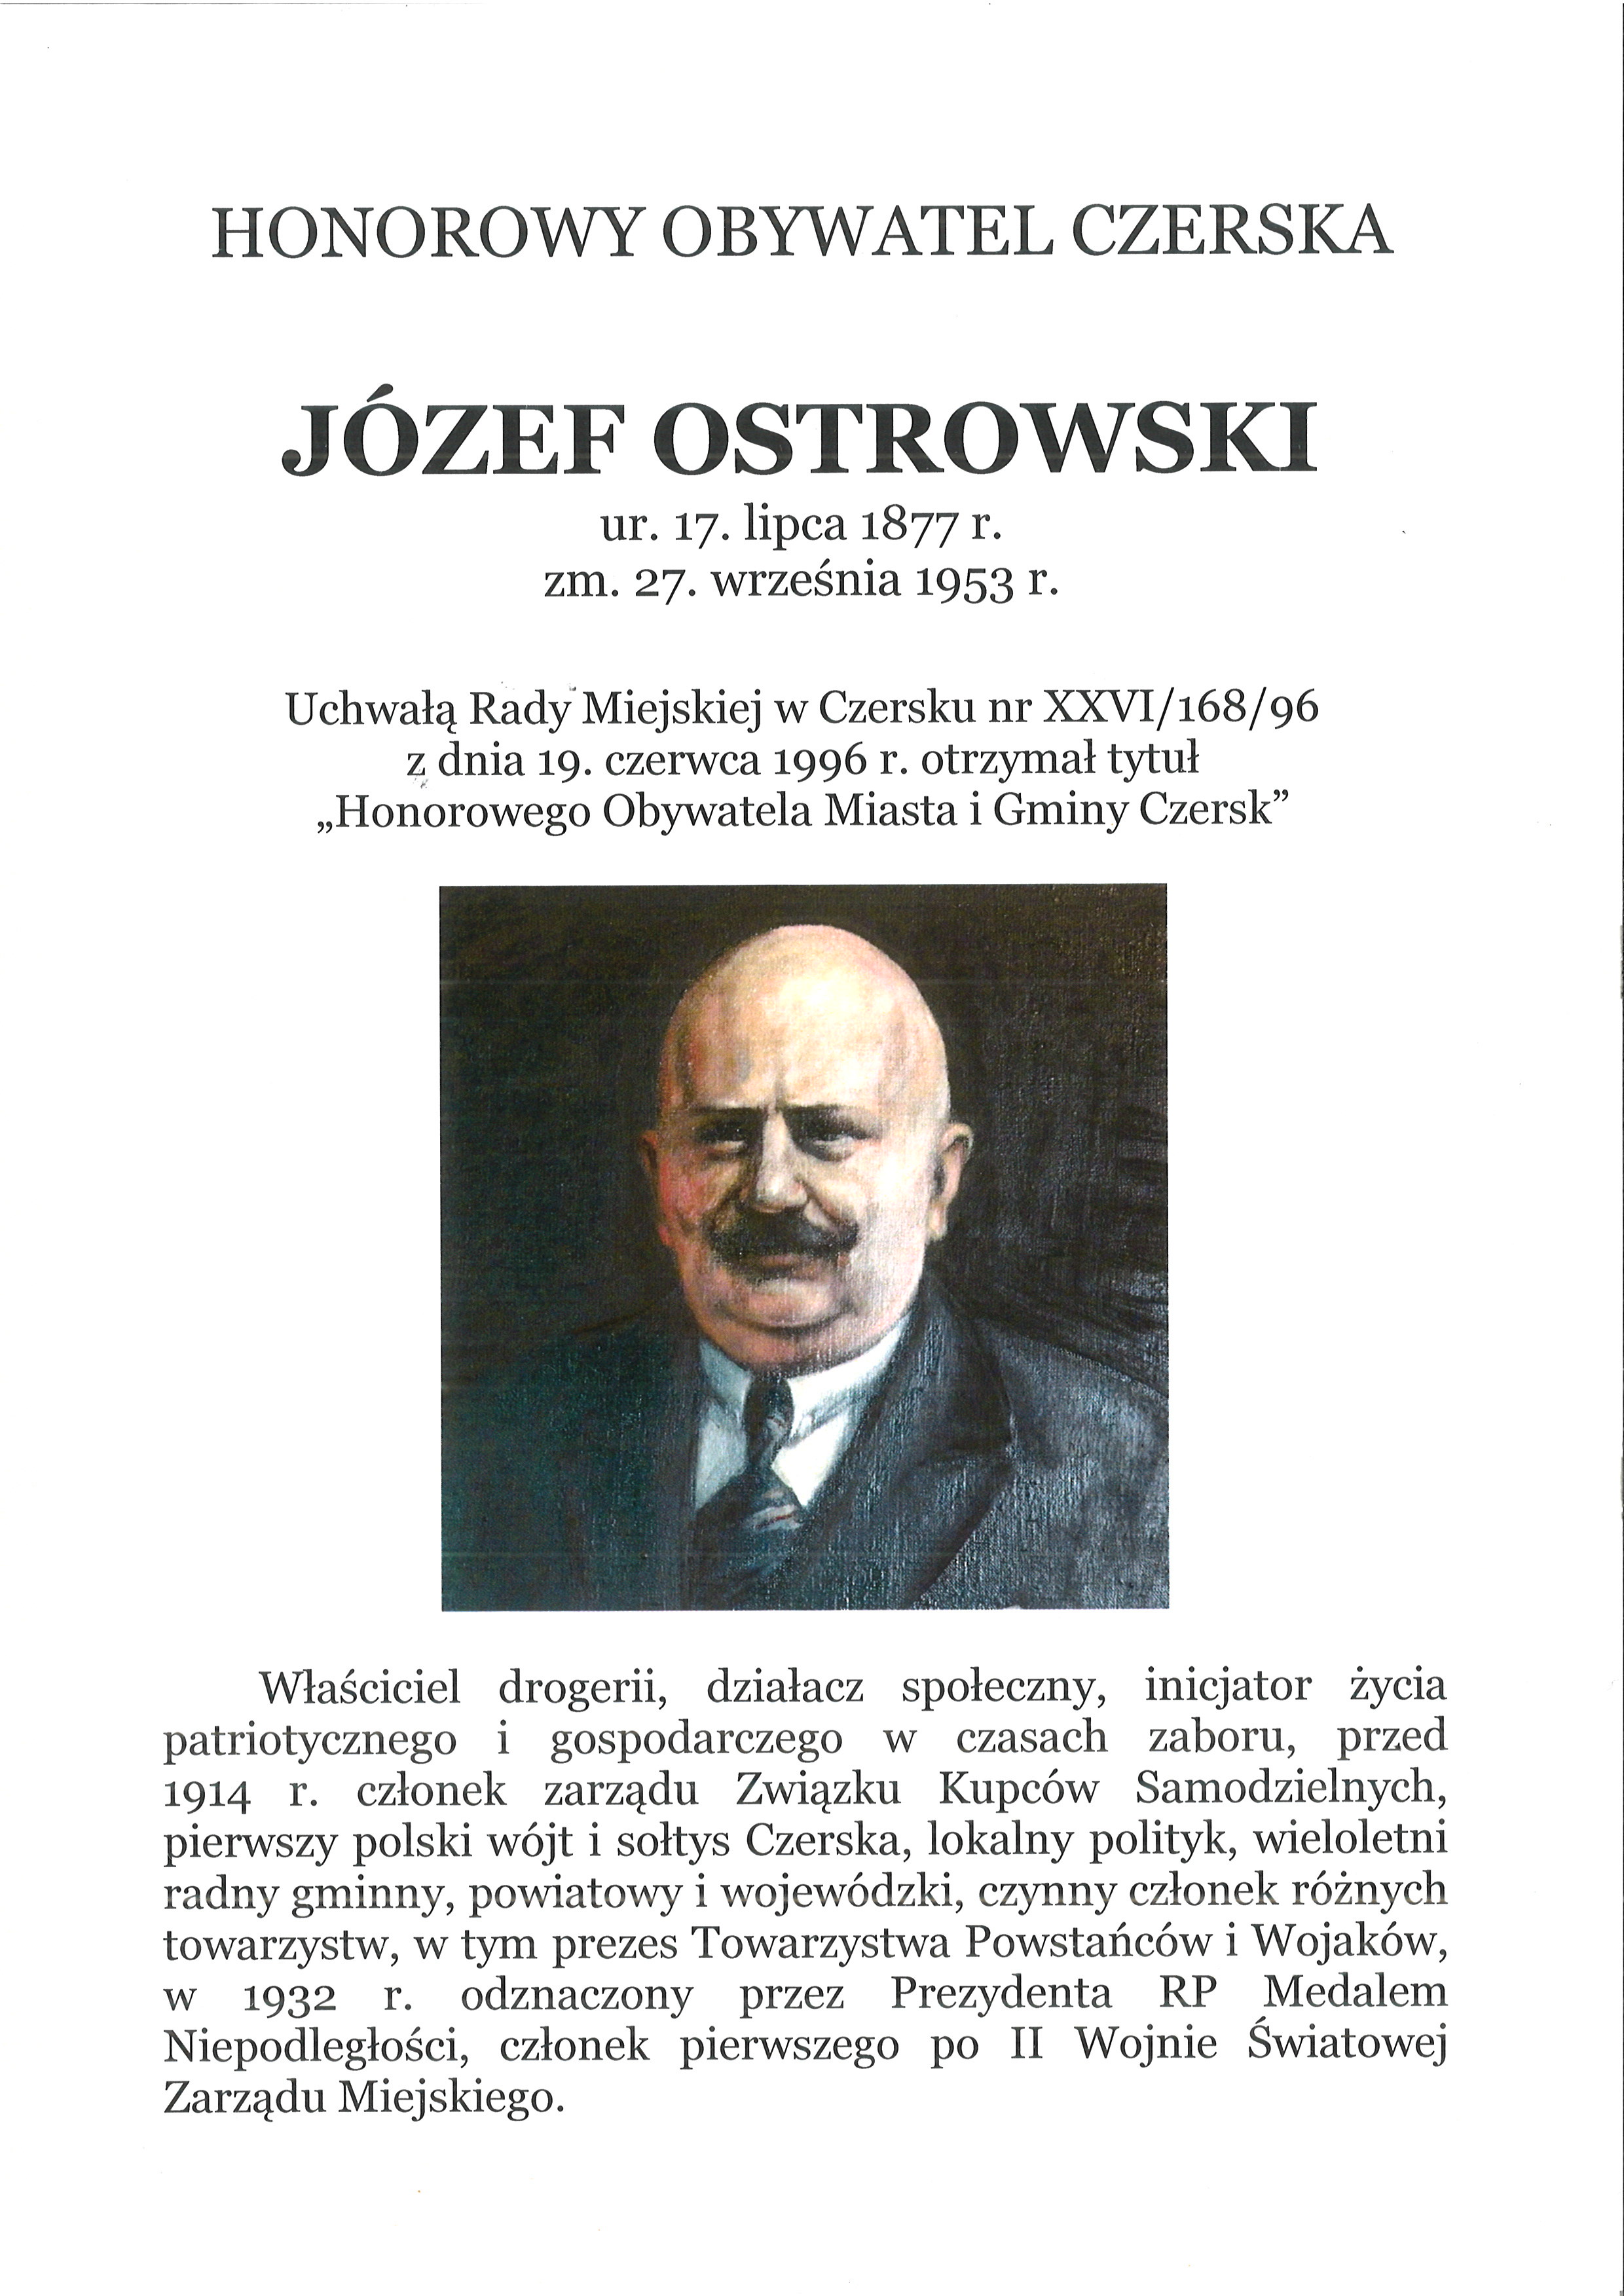 Józef Ostrowski